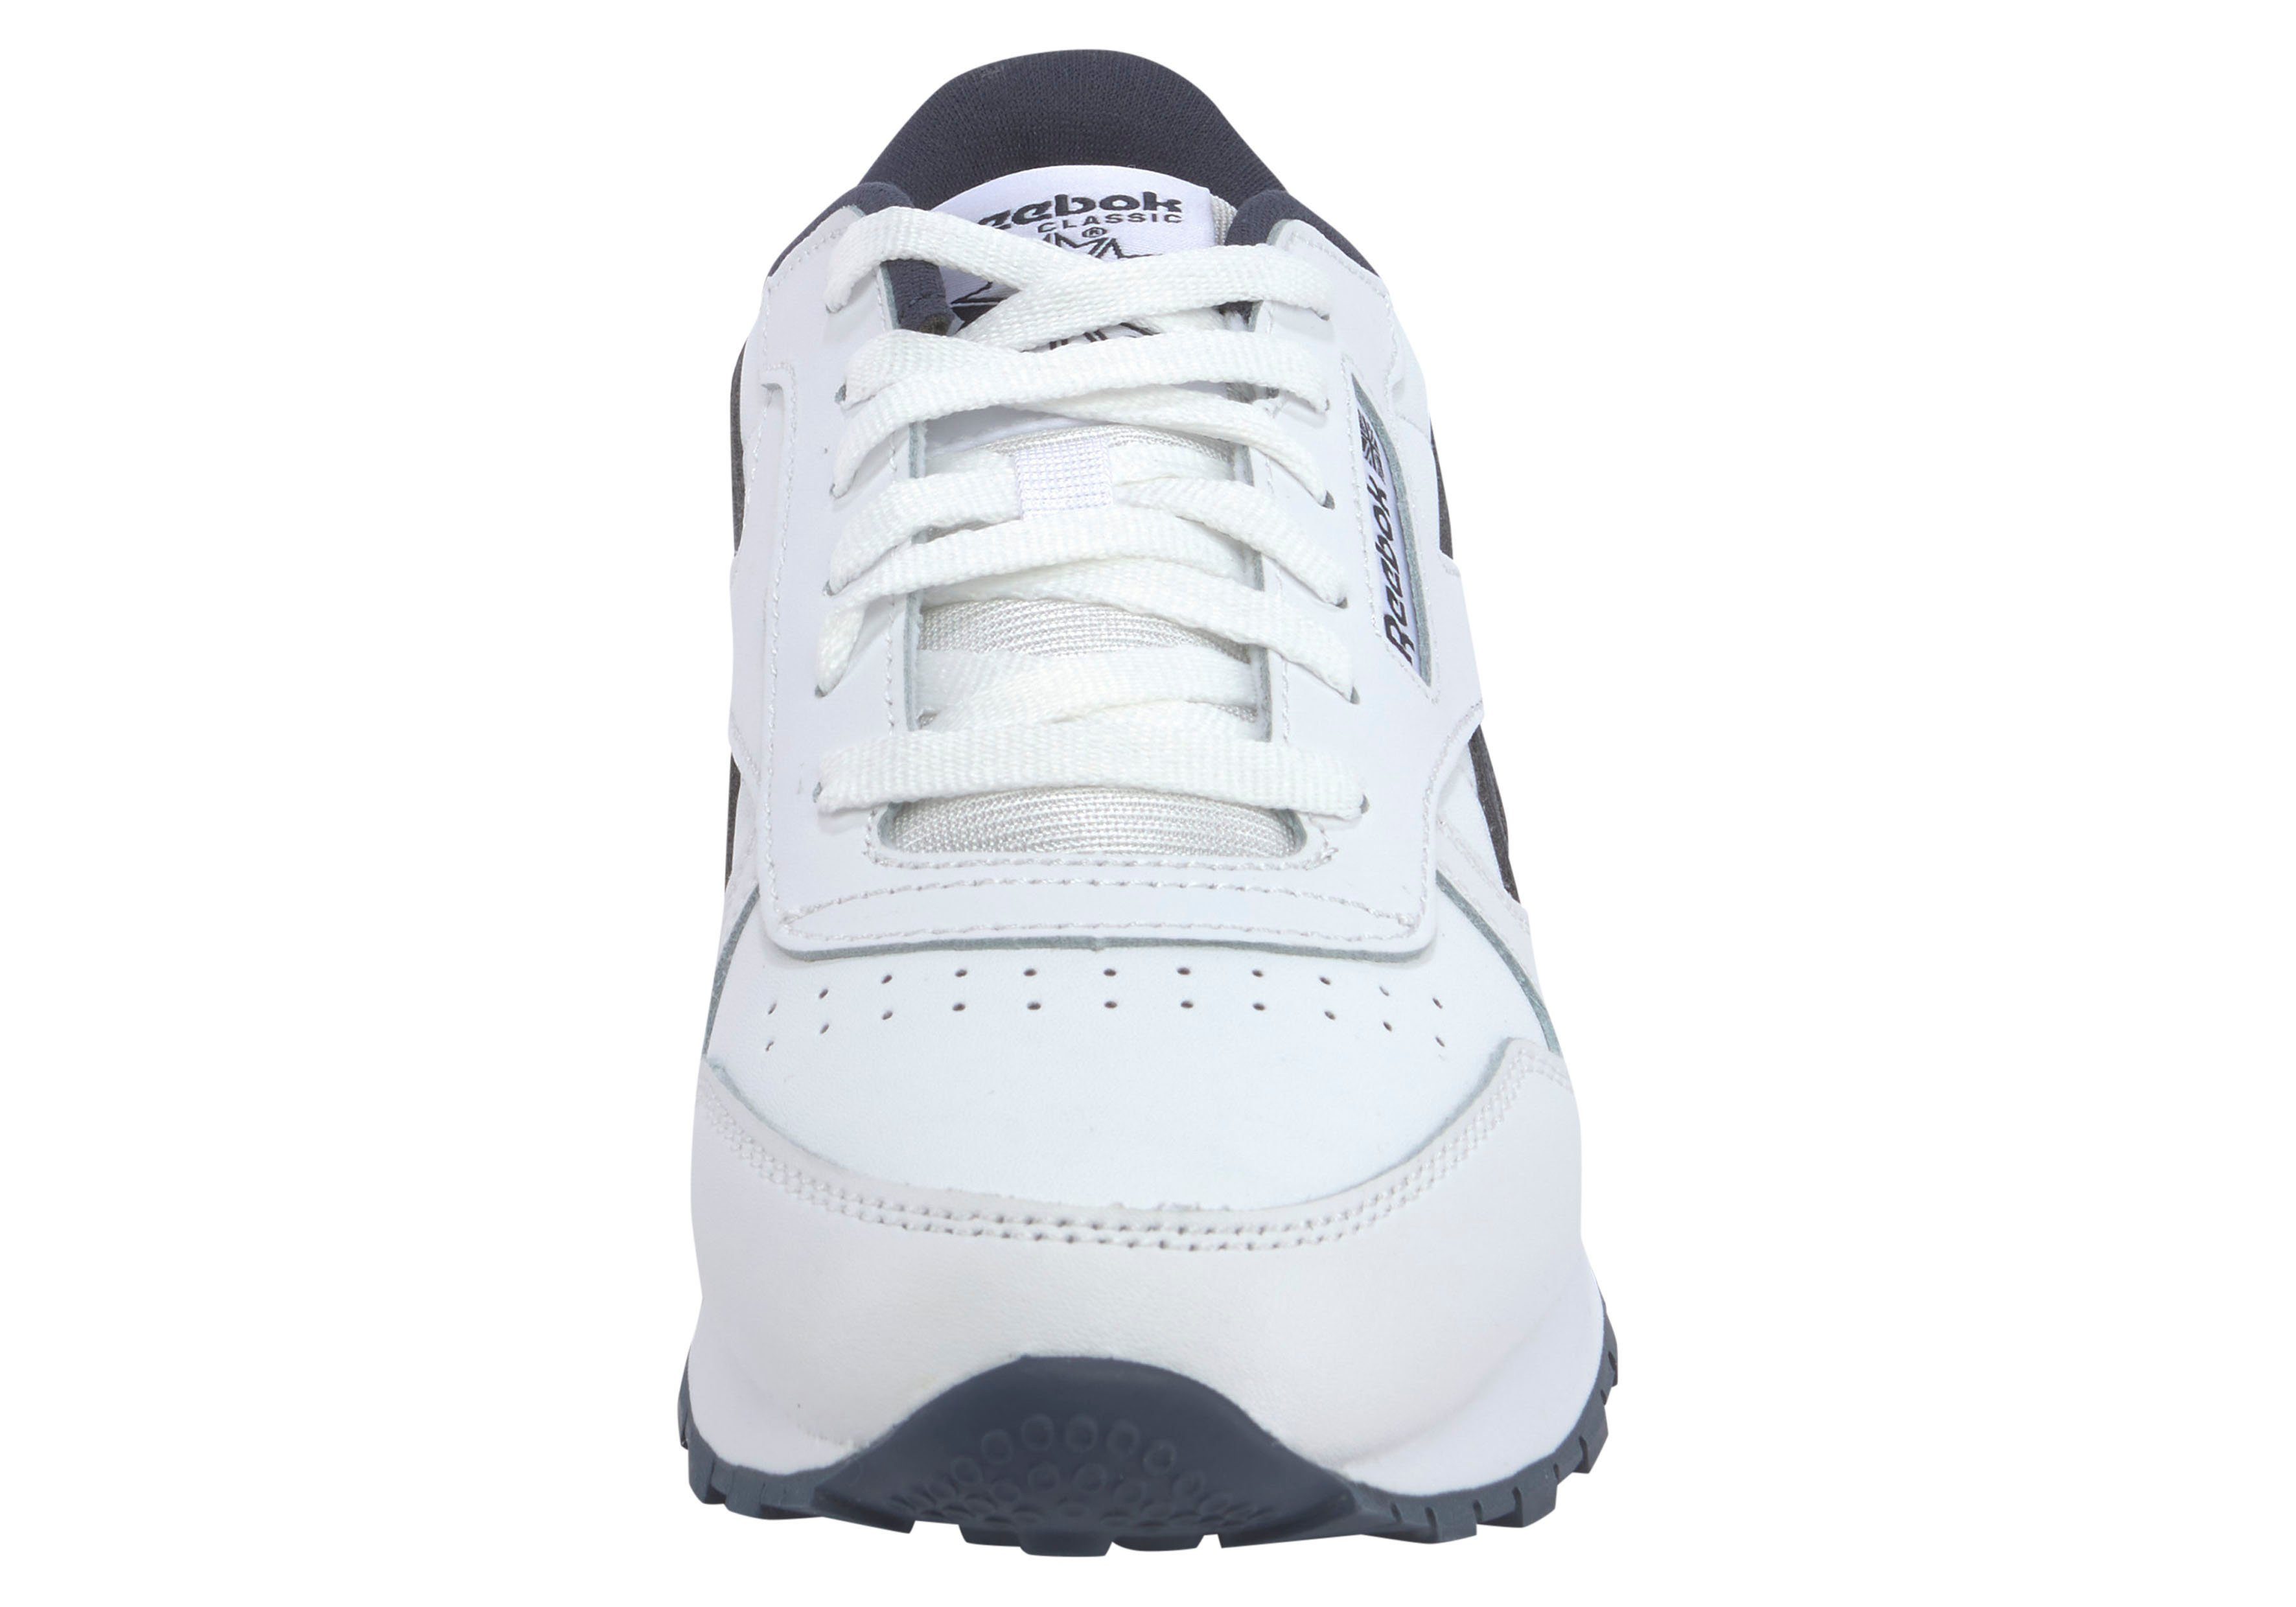 Reebok Classic CLASSIC Sneaker LEATHER weiß-schwarz